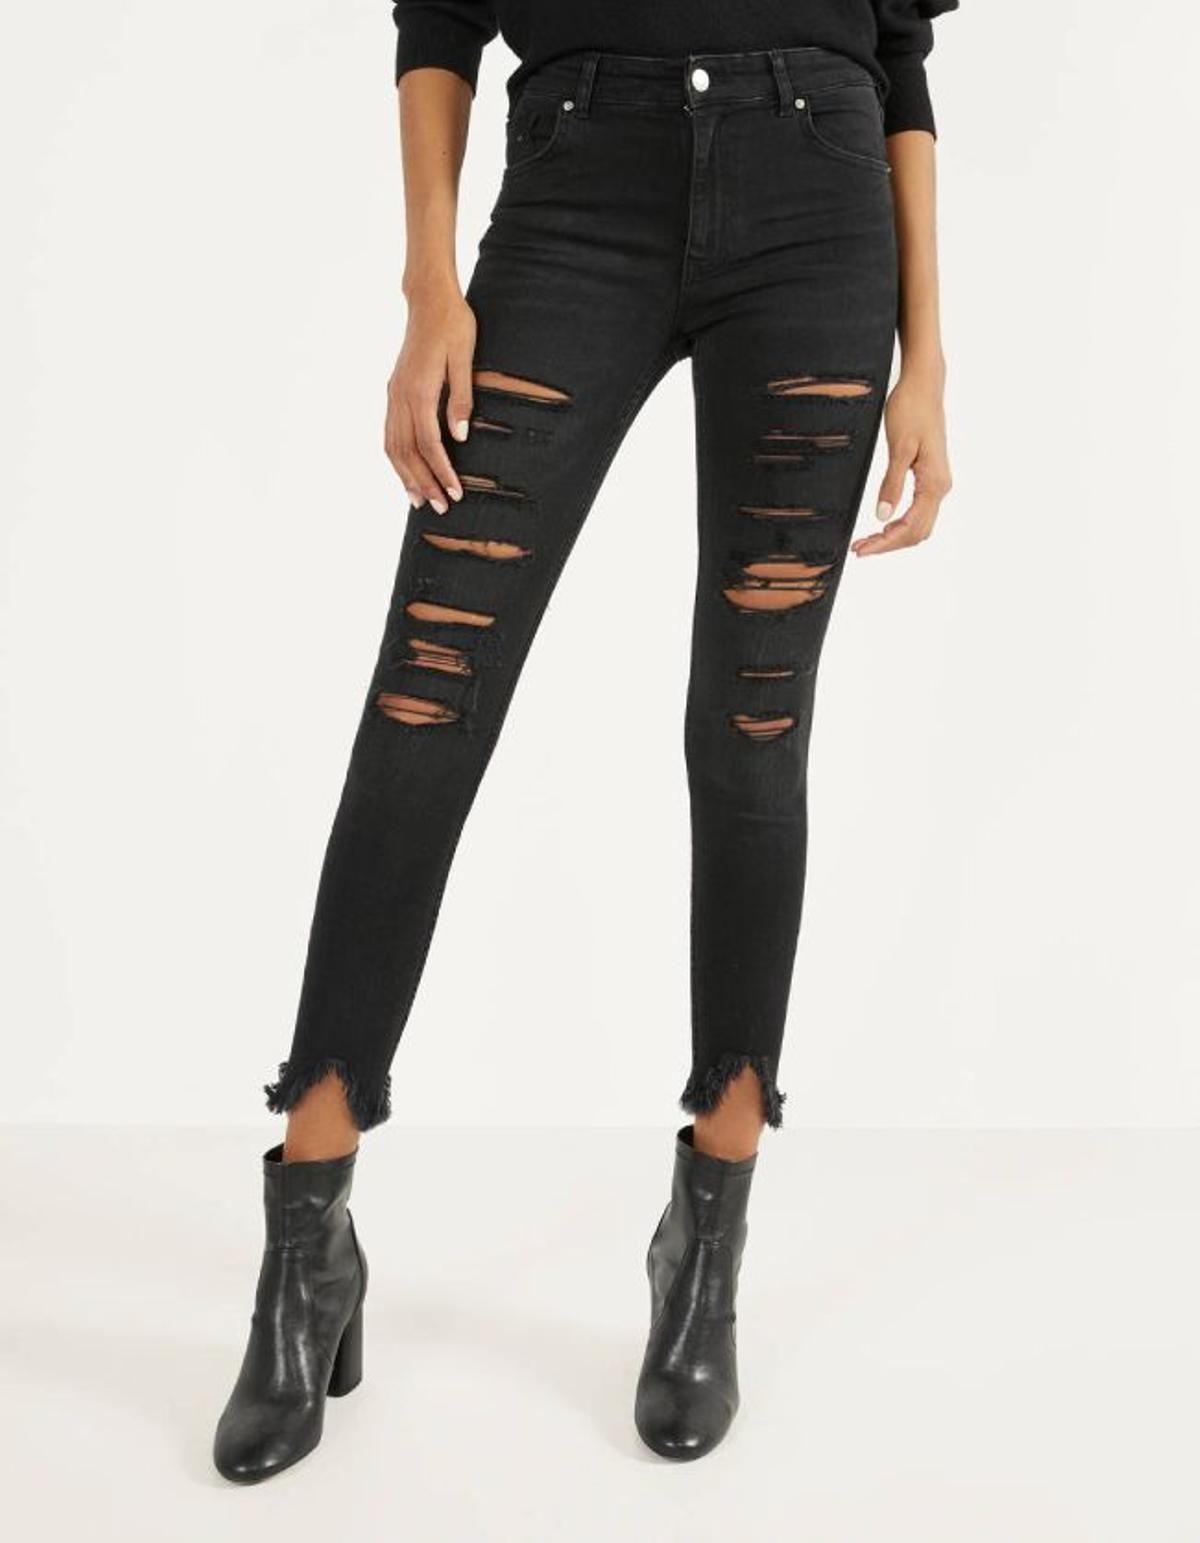 Jeans Skinny Low Waist con rotos, 19,99 euros